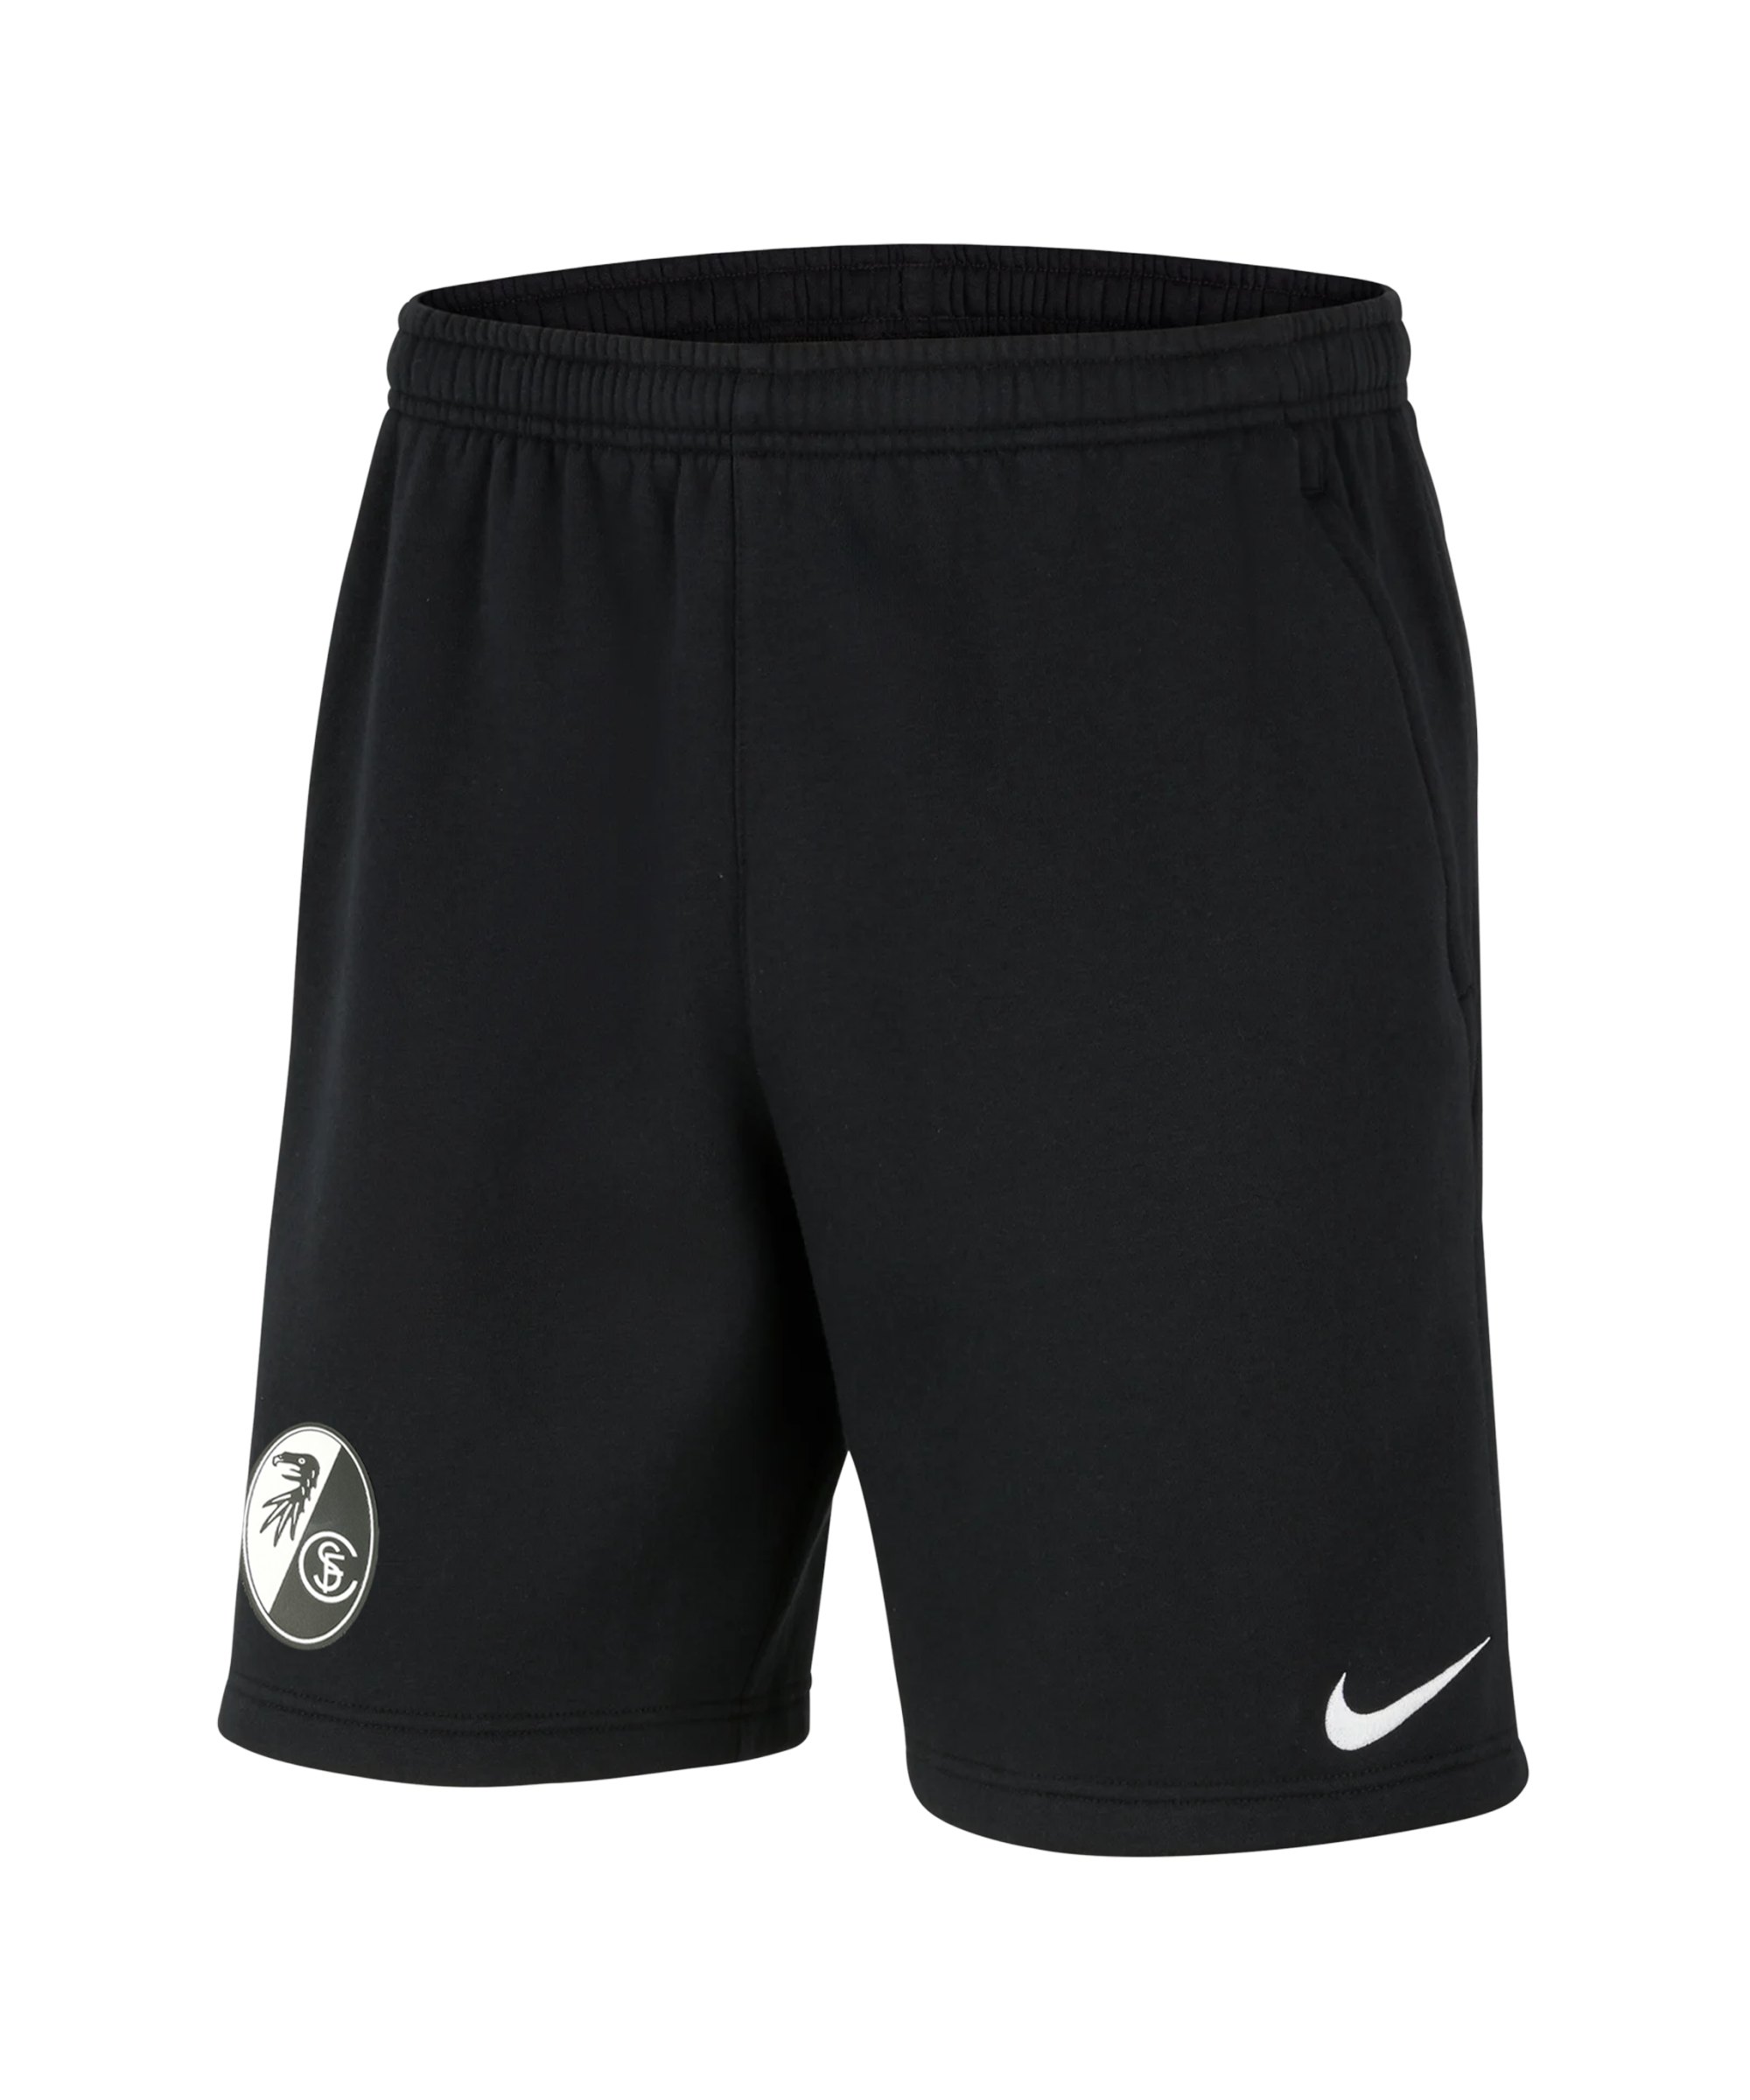 Nike SC Freiburg Fleece Short Schwarz F010 - schwarz